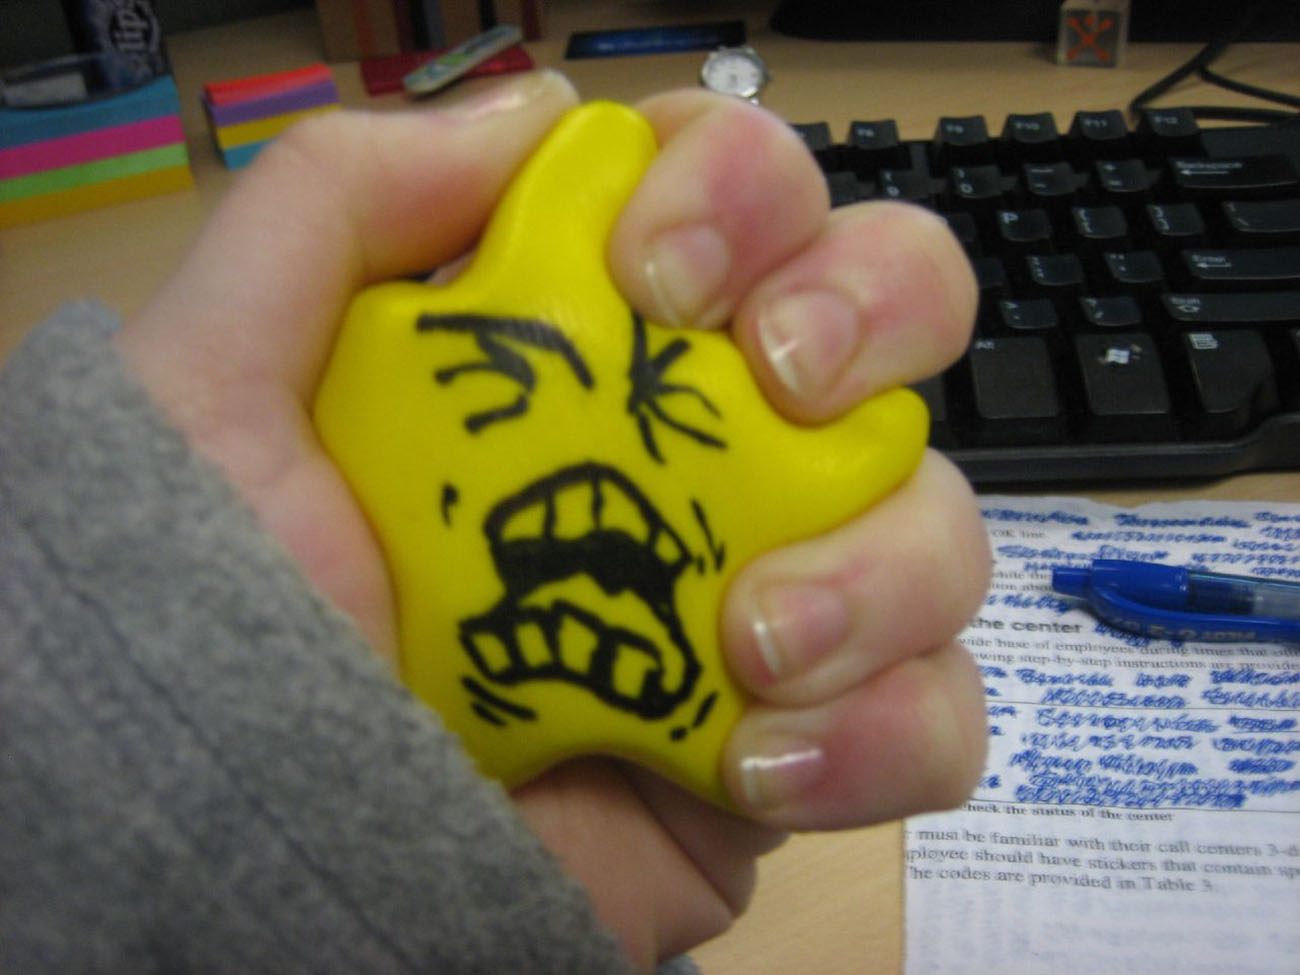 Una foto muestra una mano apretando una estrella de espuma impresa con una cara enojada y gritando.